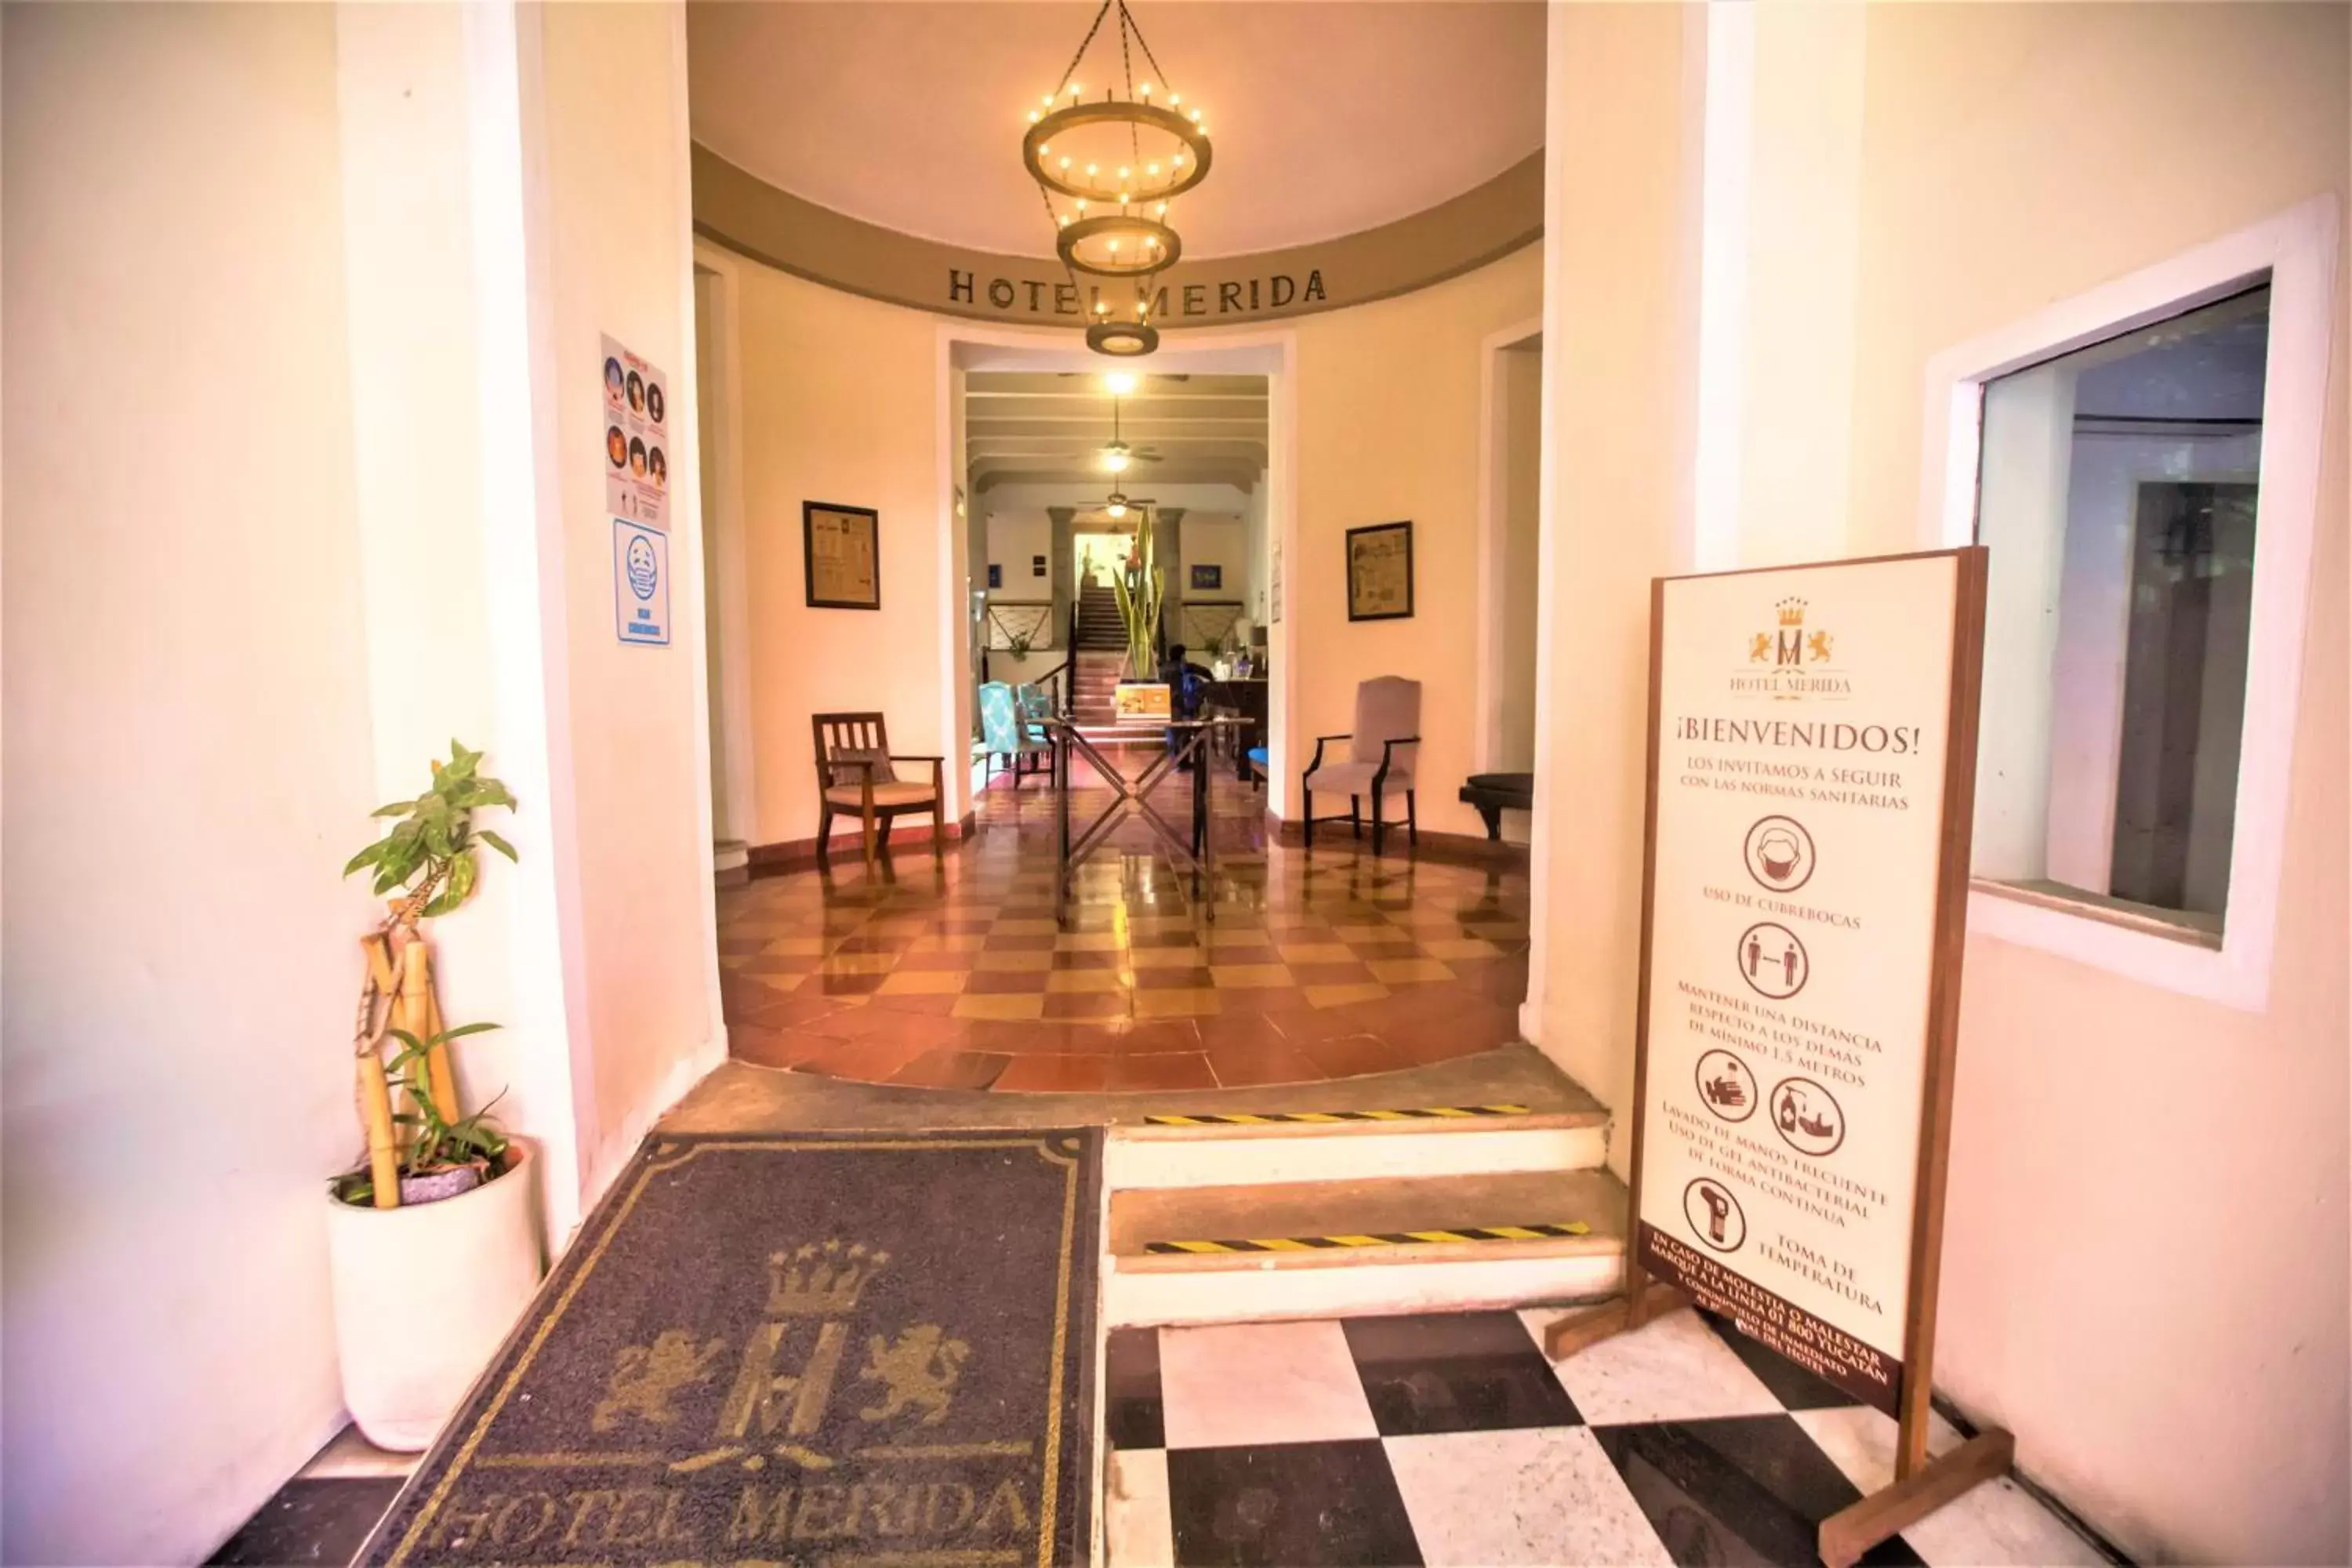 Lobby or reception, Lobby/Reception in Hotel Merida